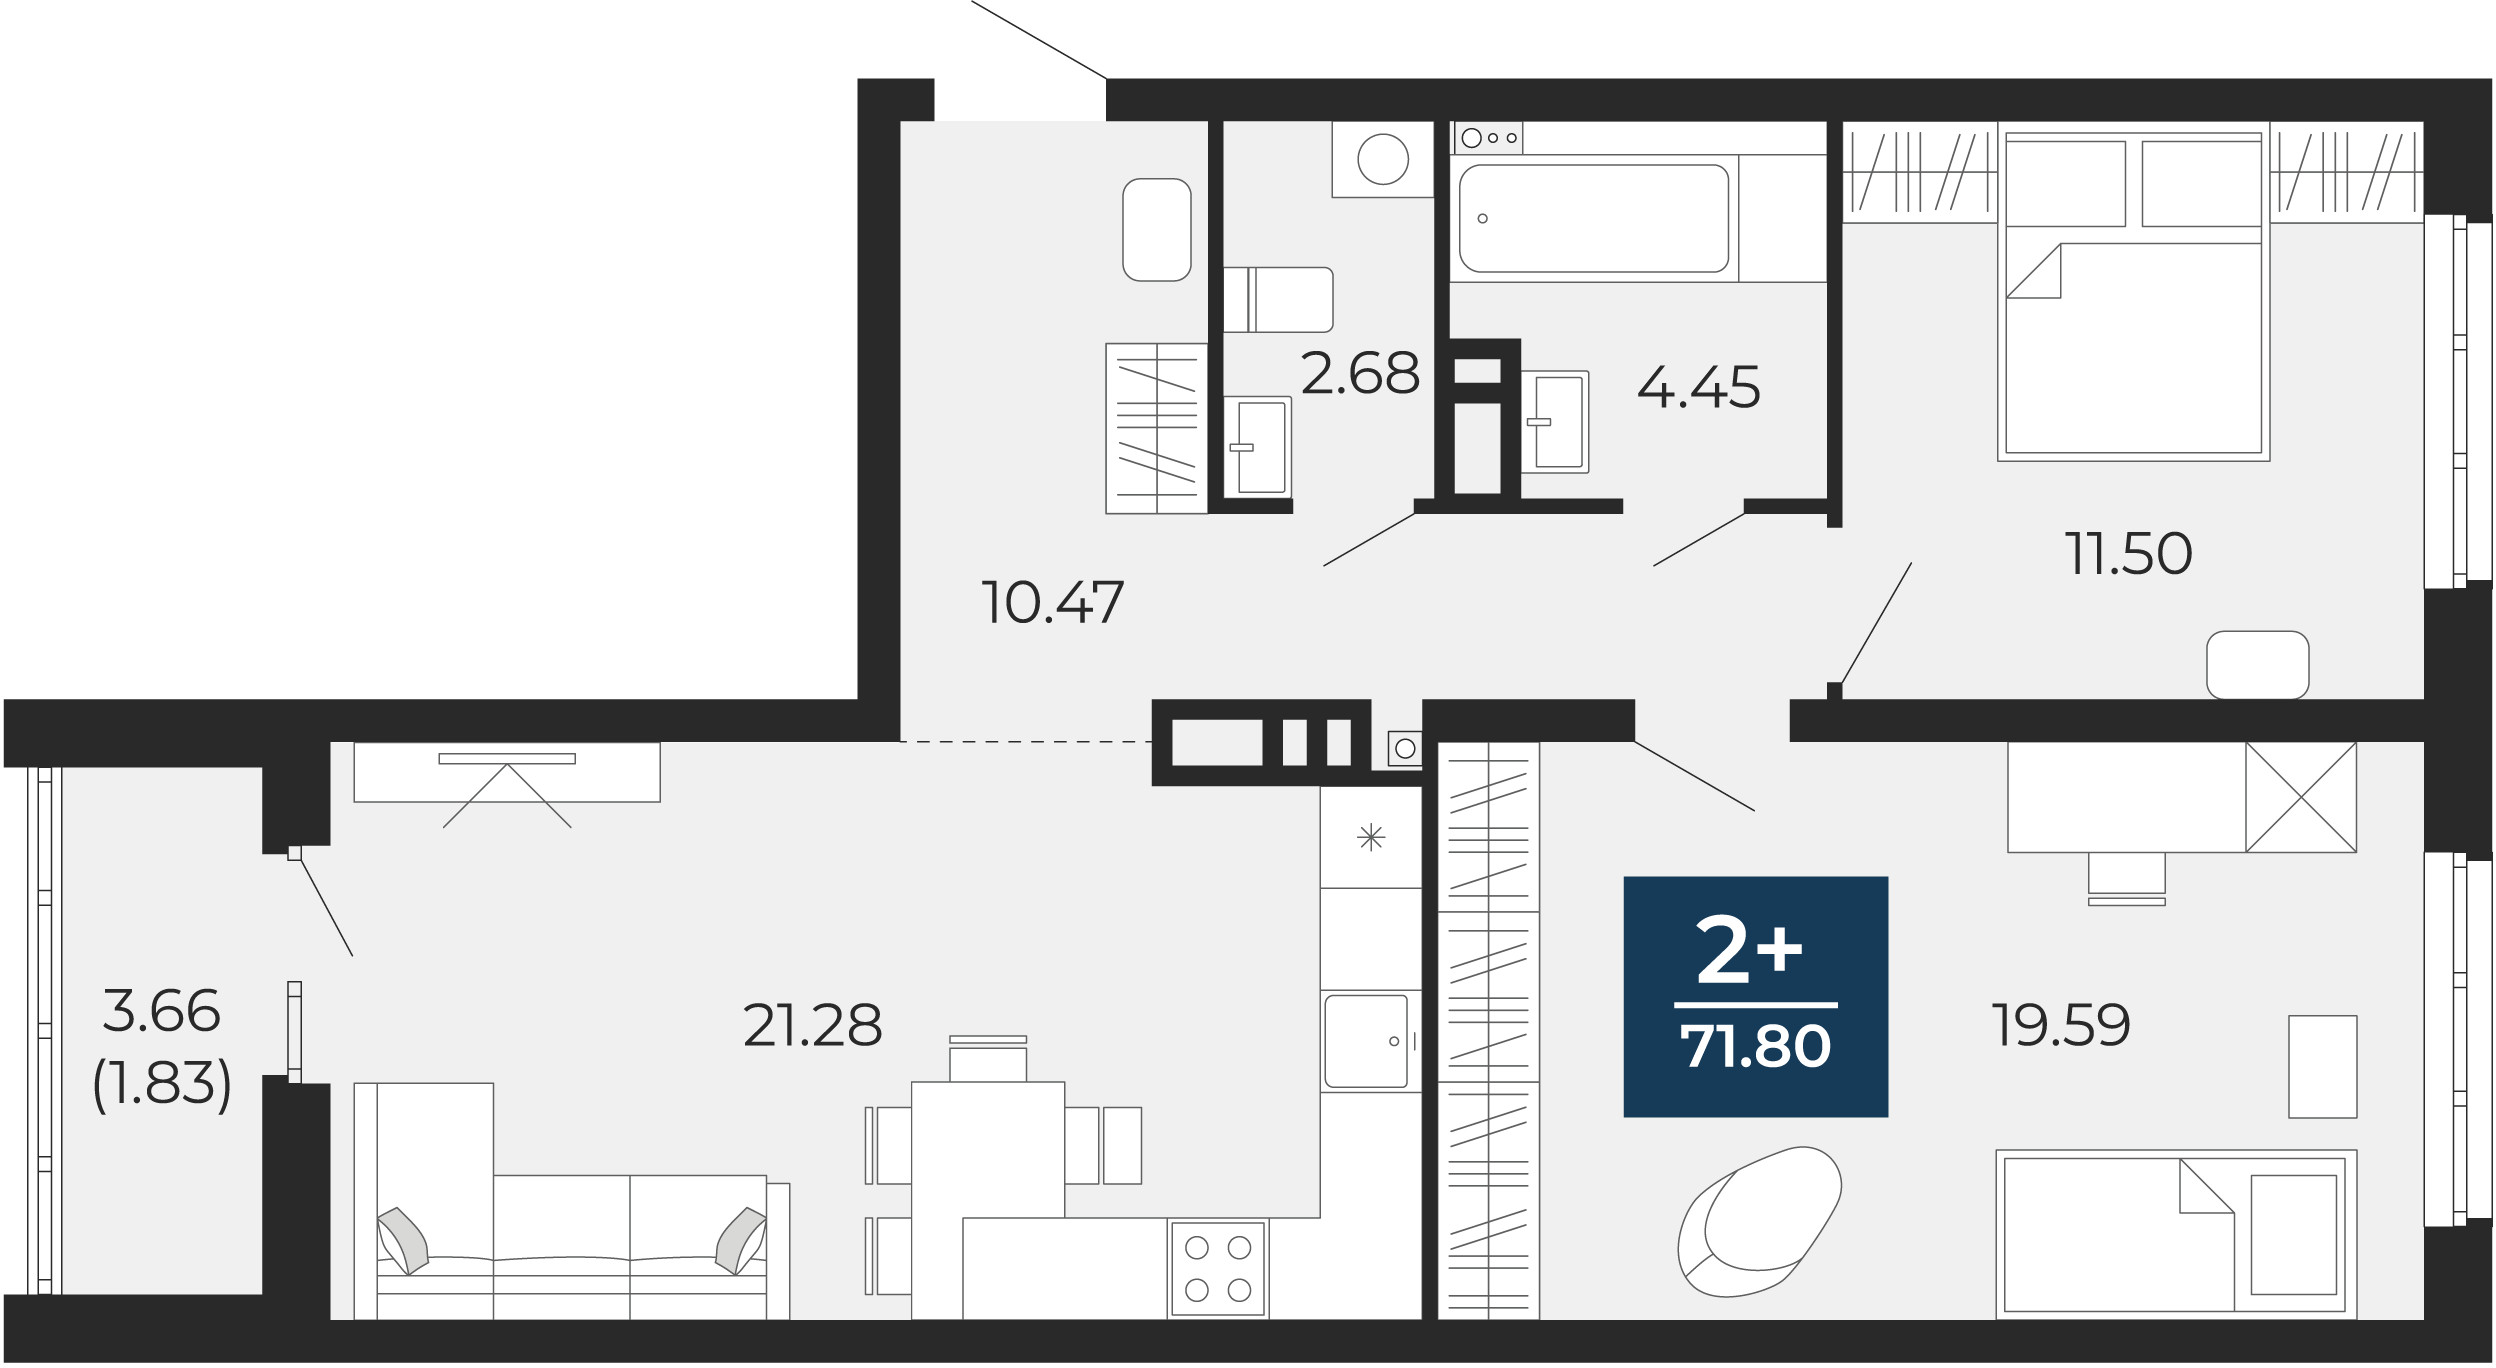 Квартира № 268, 2-комнатная, 71.8 кв. м, 10 этаж